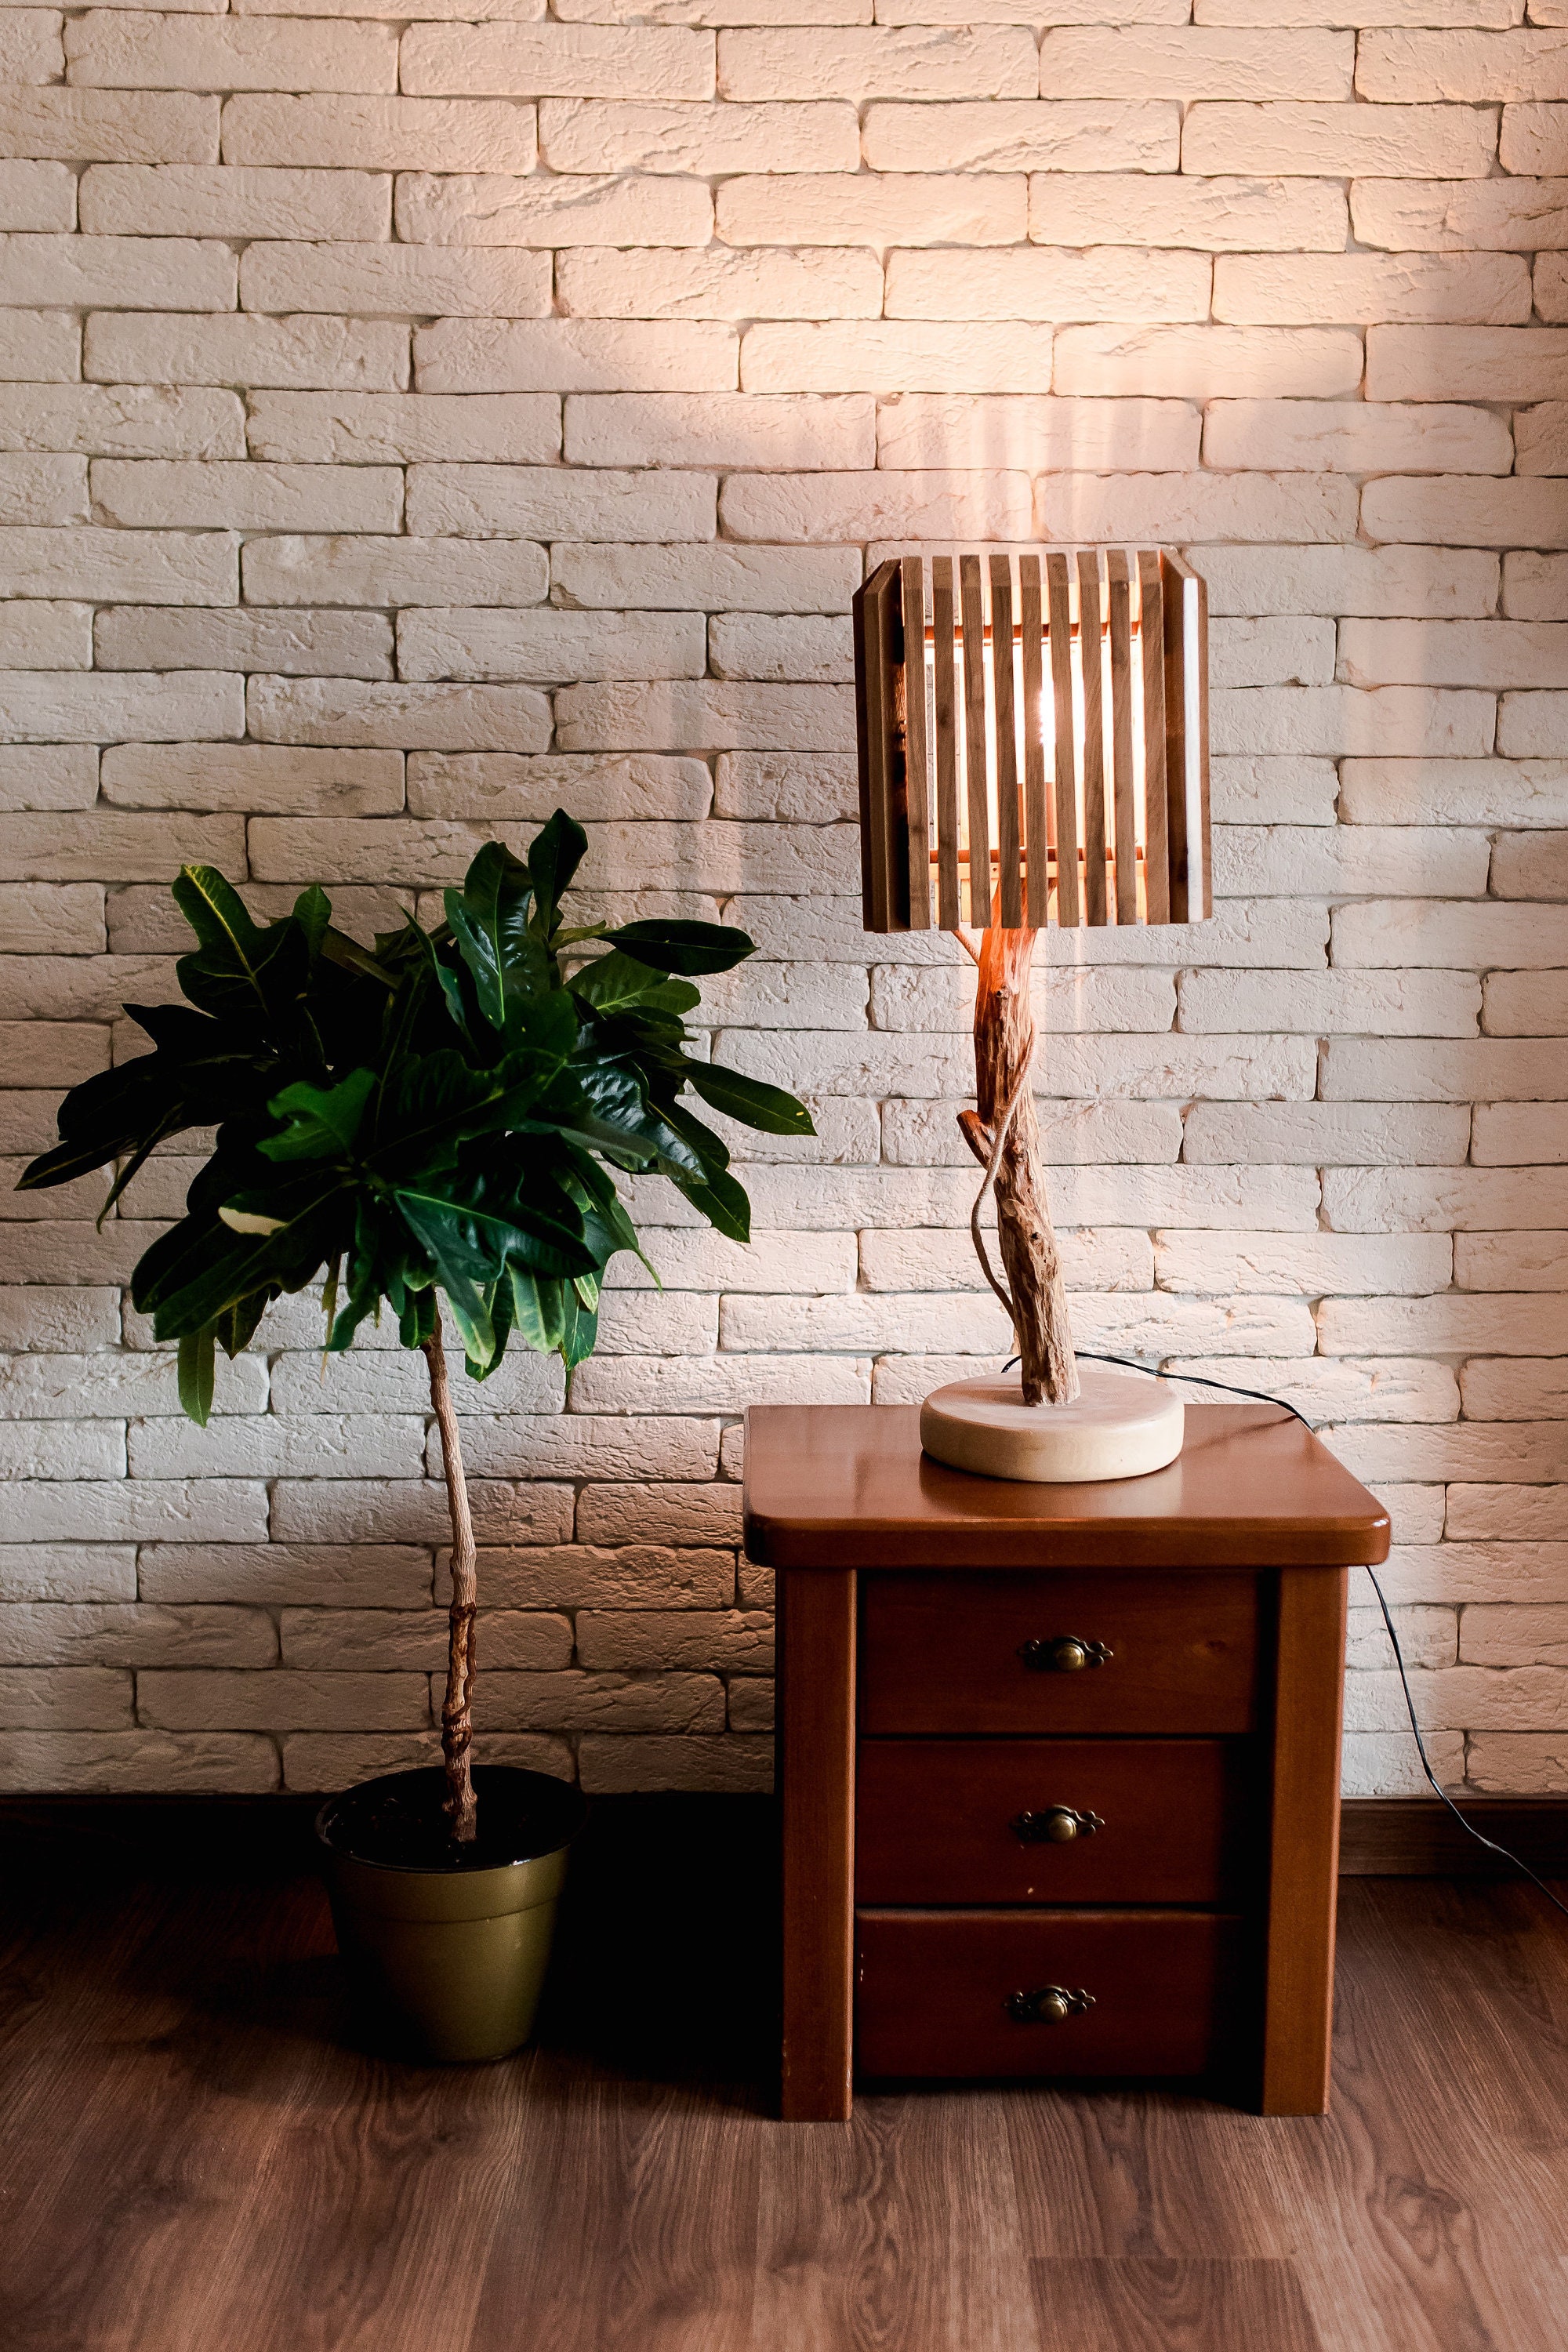 Lampe en Bois Flotté, sur Mesure Fait-Main Design Original Unique Custom Handmade Driftwood Woodlamp